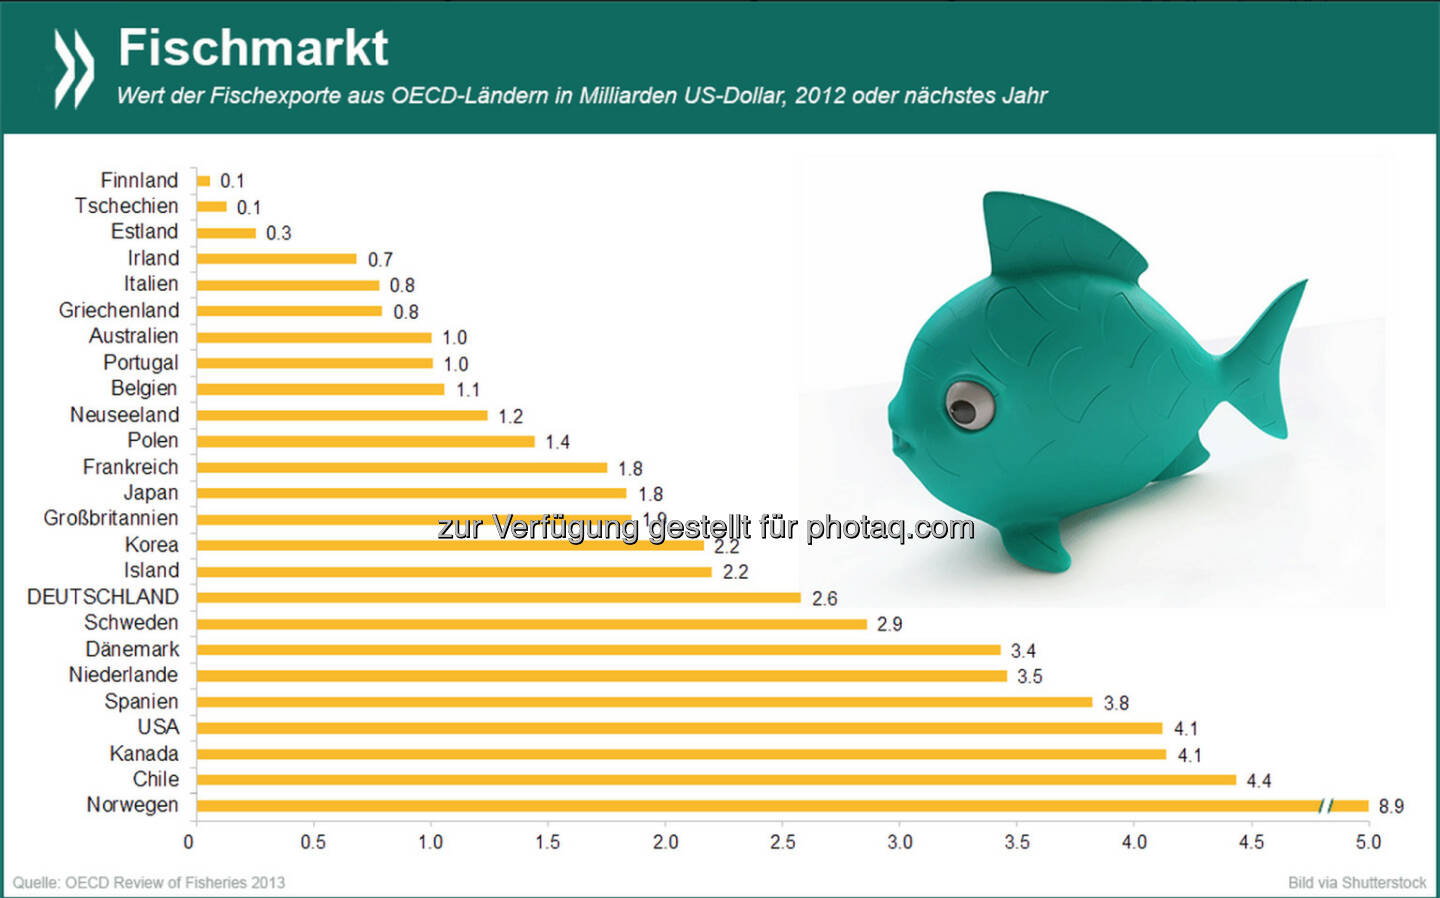 Gold-Fische: Die Fischereiwirtschaft (inklusive Aquakultur) gehört in einigen OECD-Ländern zu den wichtigsten Wirtschaftszweigen. Mit Abstand das größte Geschäft in diesem Bereich macht Norwegen – 2012 exportierte das Land Fisch im Wert von 8,9 Milliarden US-Dollar.

Mehr Informationen zum Thema gibt es unter: http://bit.ly/1sm4wqU (S.25)